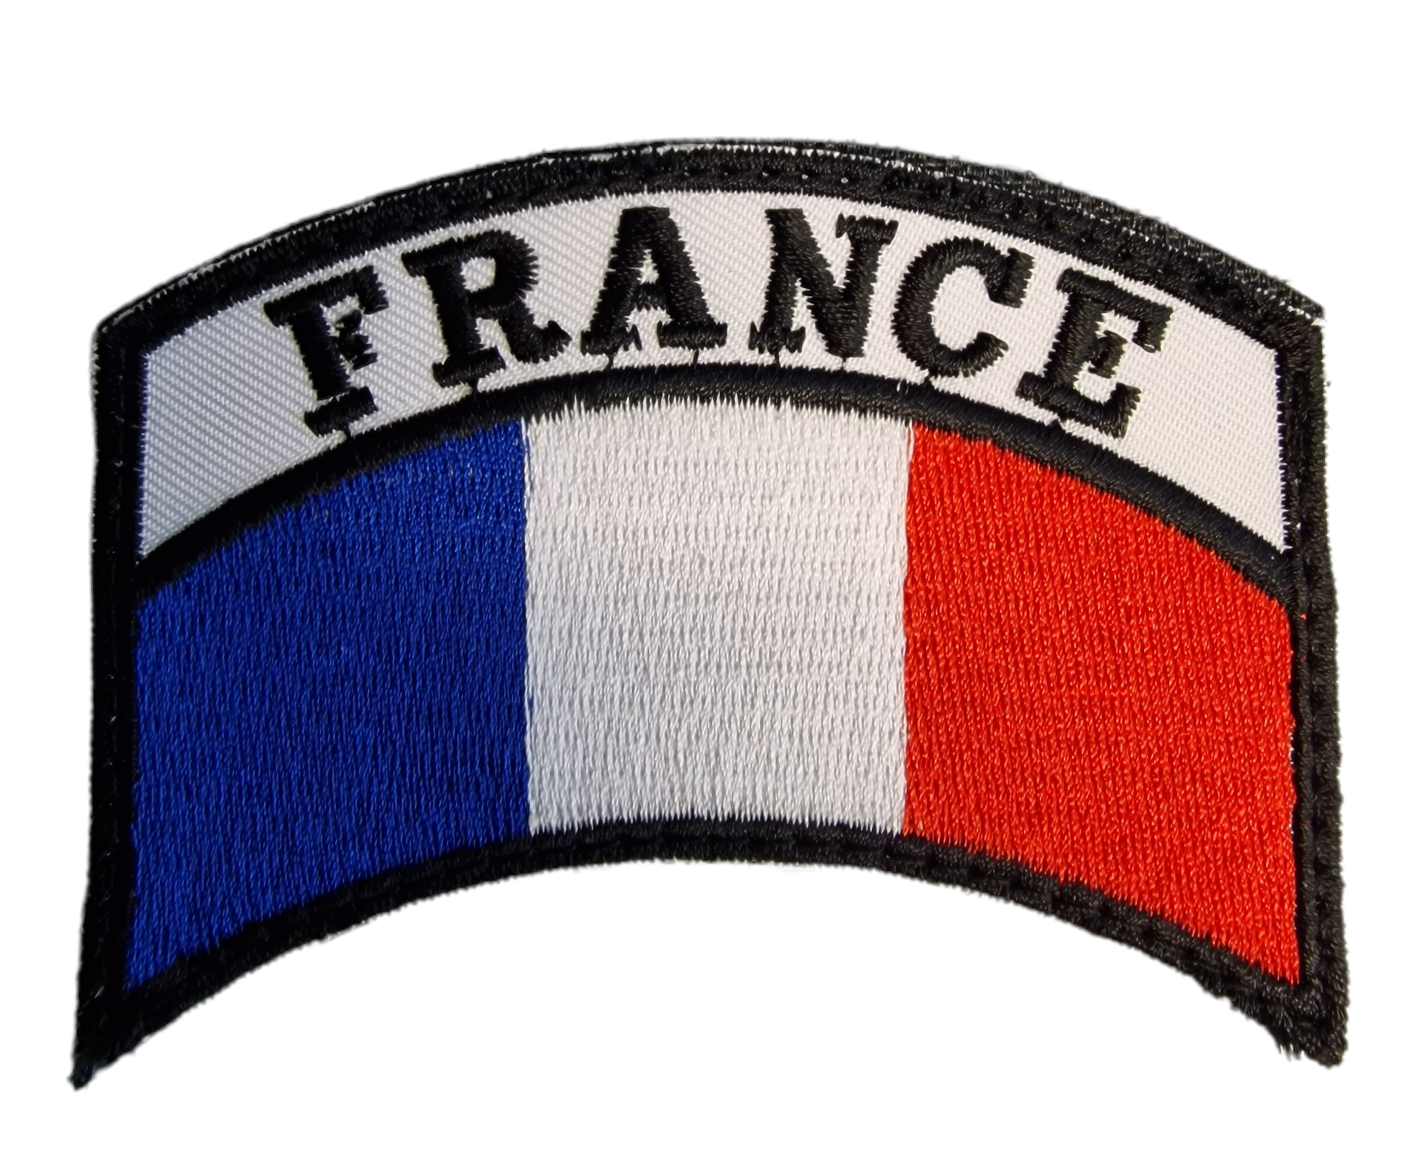 Ecusson Personnel Navigant FRANCE 53980 : Au col bleu